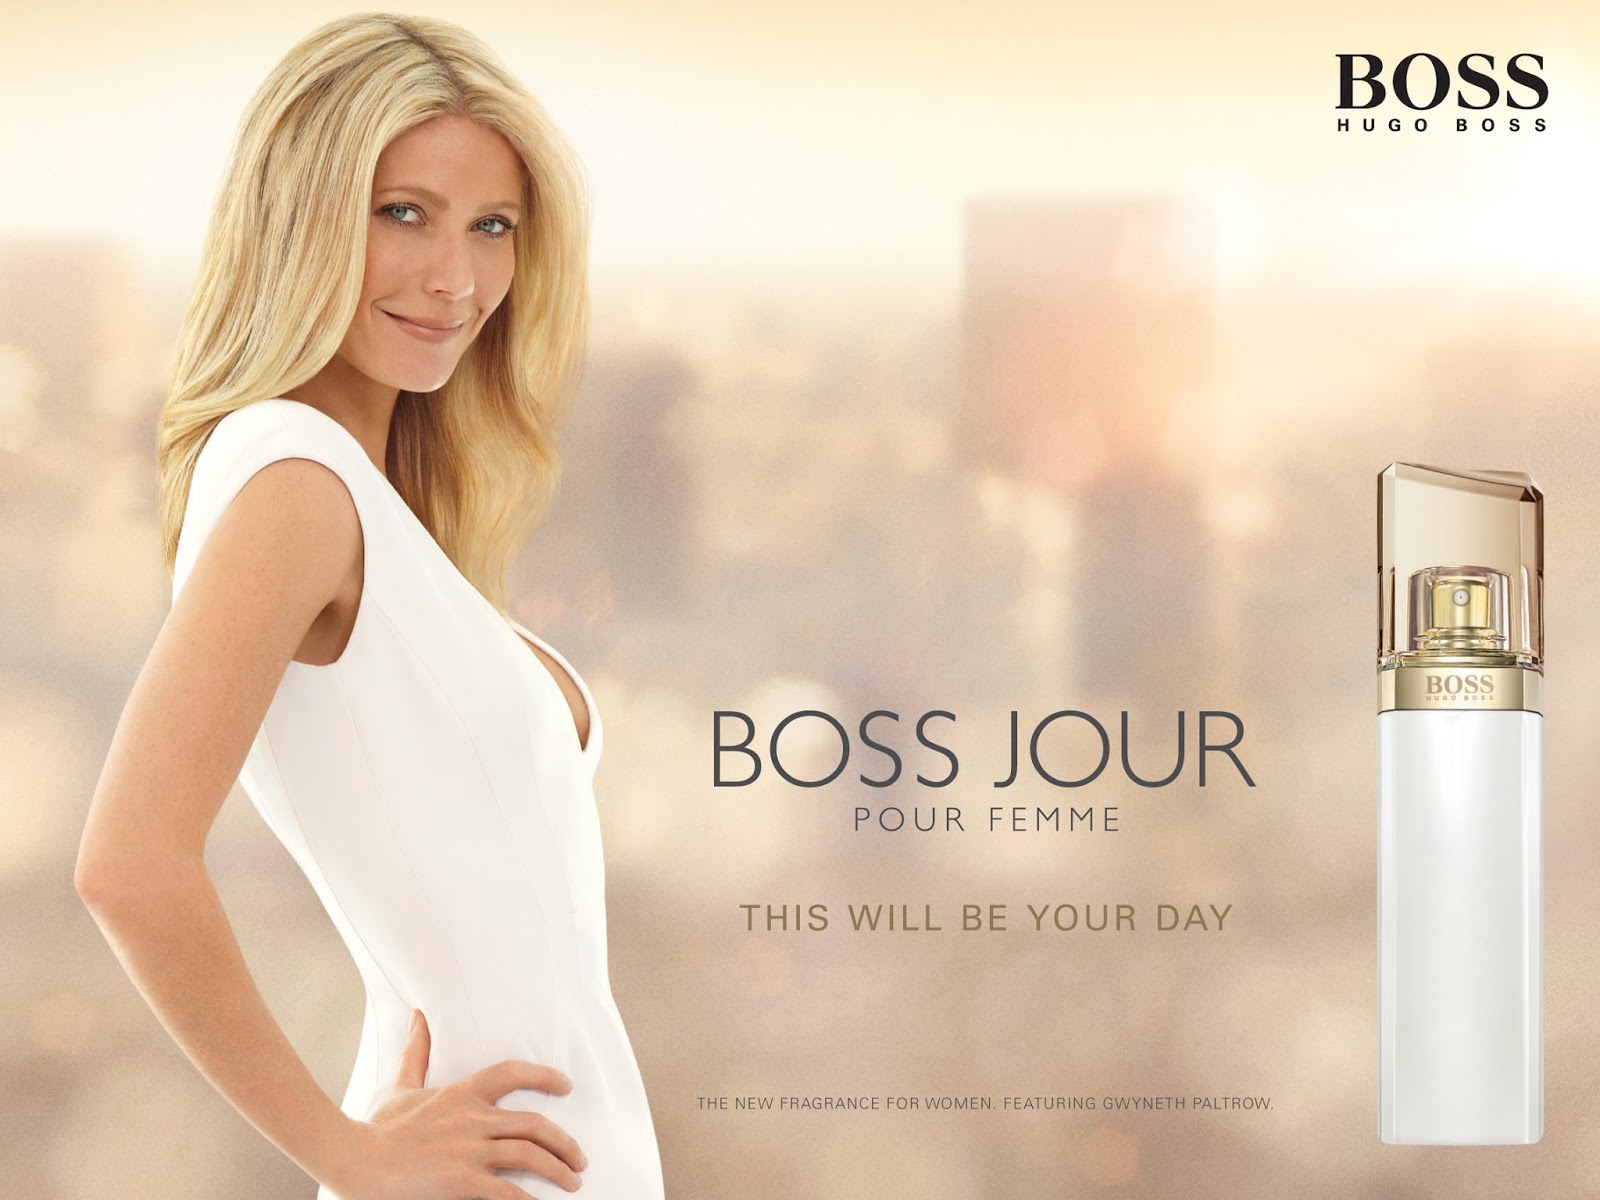 Boss Jour Pour Femme Review (1)